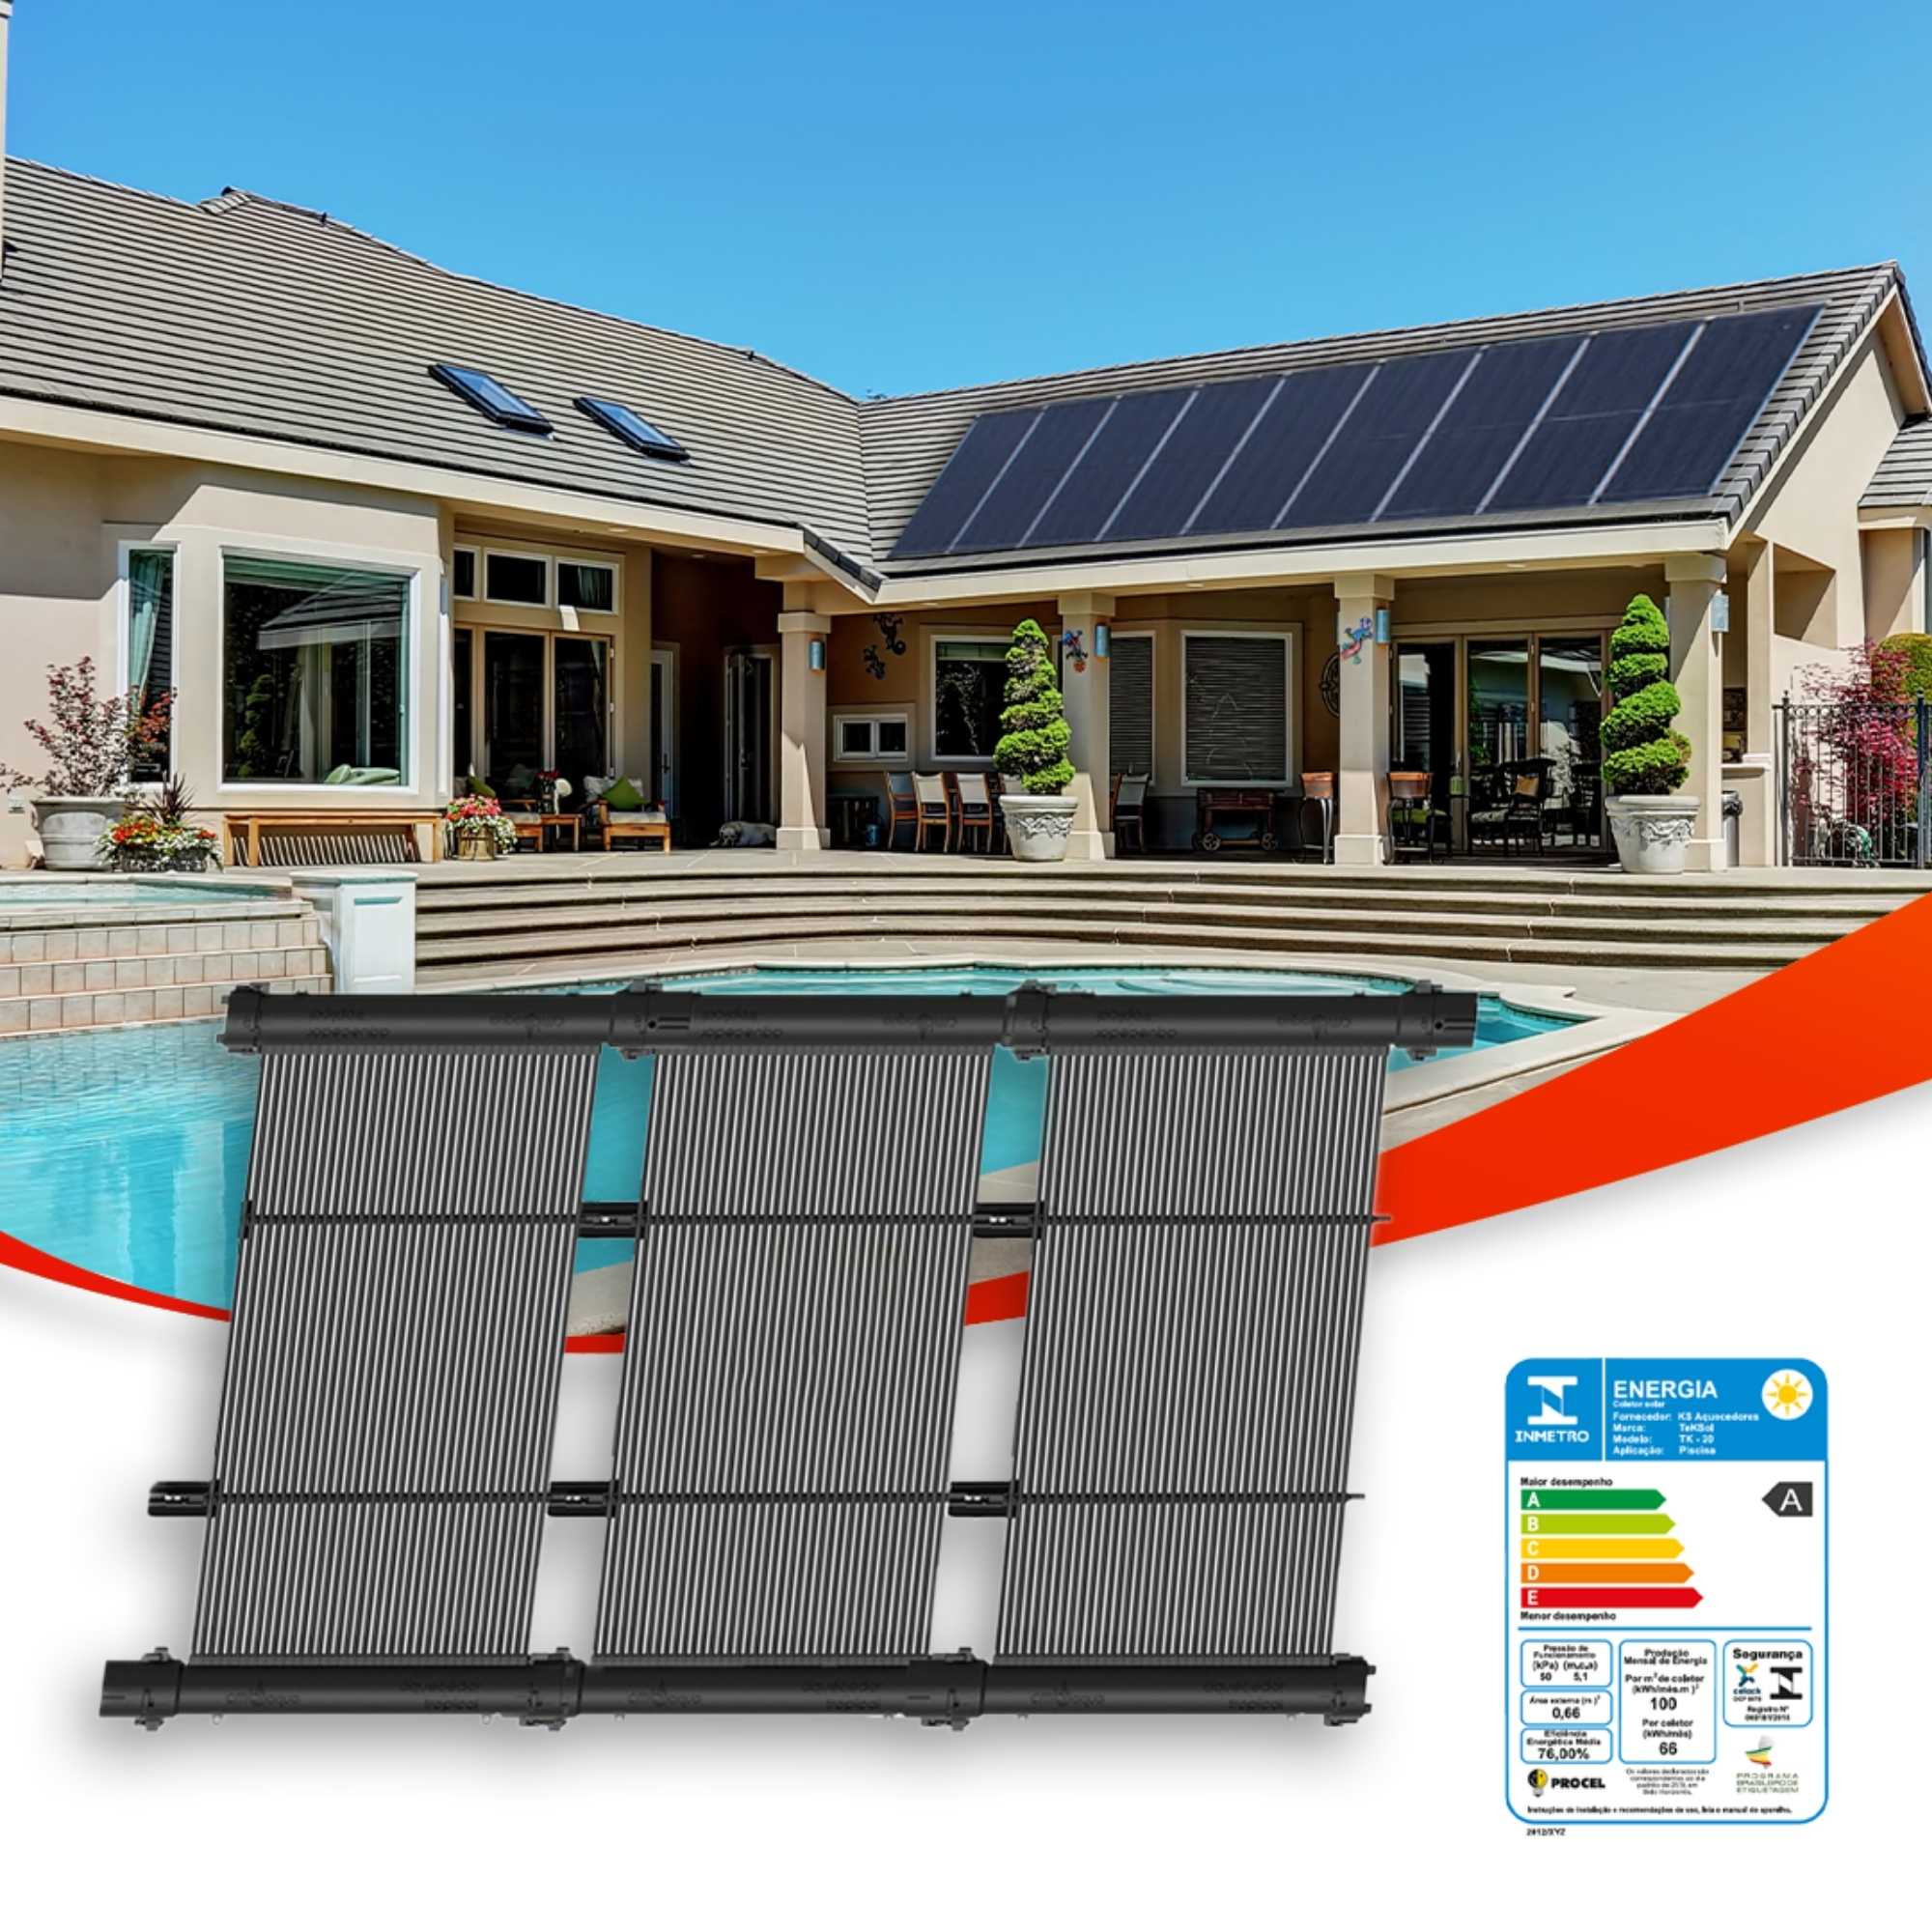 Kit Aquecedor Solar para Piscinas de até 12m²  ou até 16 mil litros TekSol com Controlador de Temperatura Bivolt - Sol e Água Piscinas e Acessórios